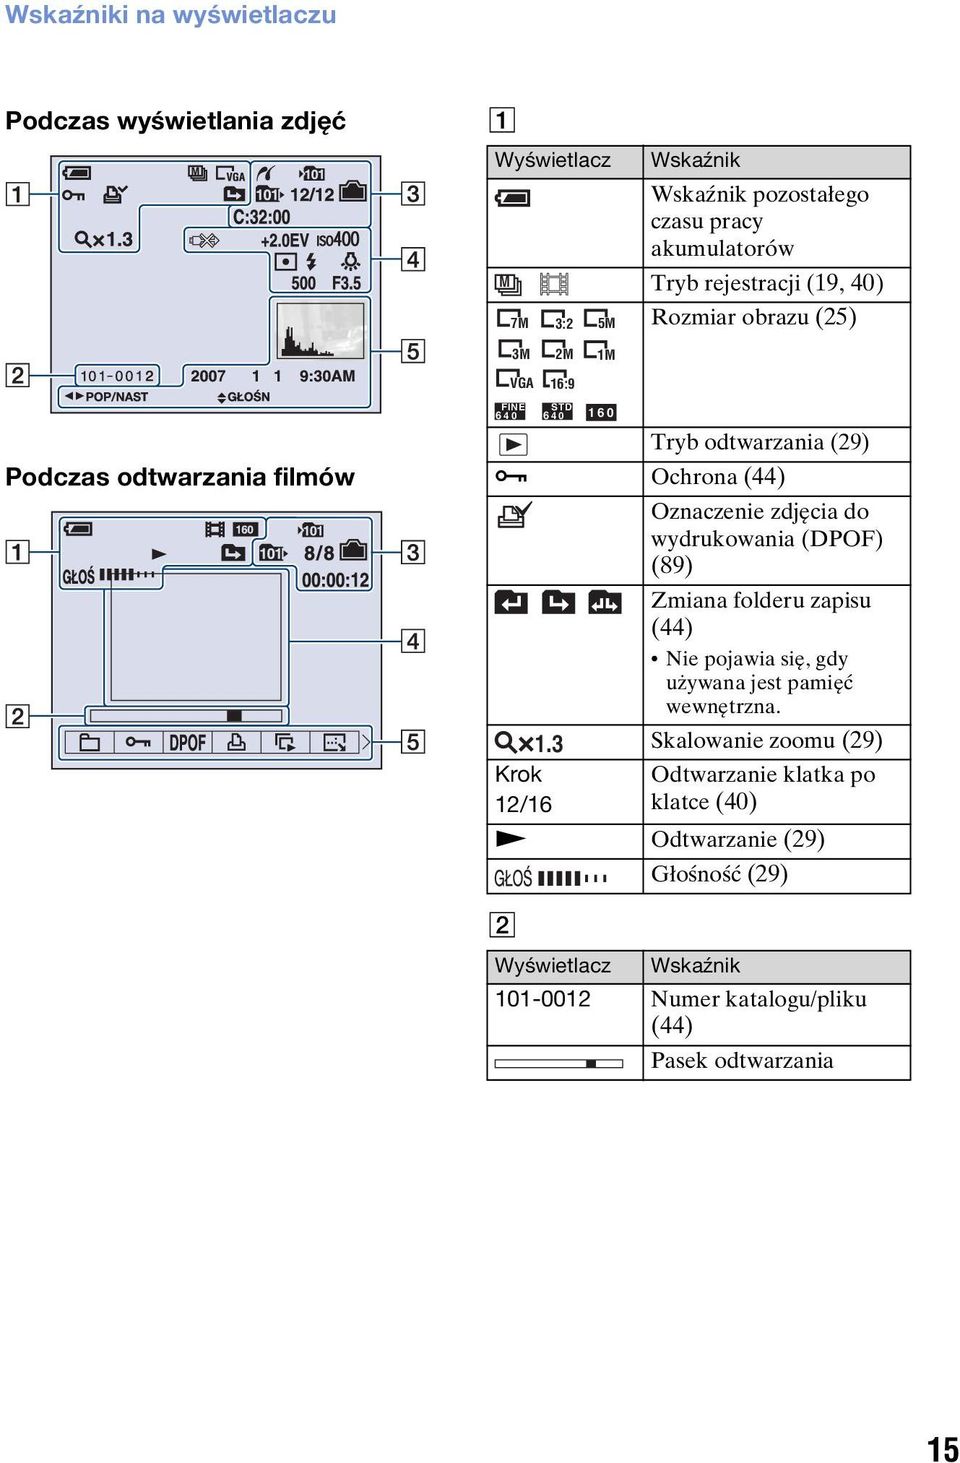 3 Krok 12/16 1M STD 6 40 160 Oznaczenie zdjęcia do wydrukowania (DPOF) (89) Zmiana folderu zapisu (44) Nie pojawia się, gdy używana jest pamięć